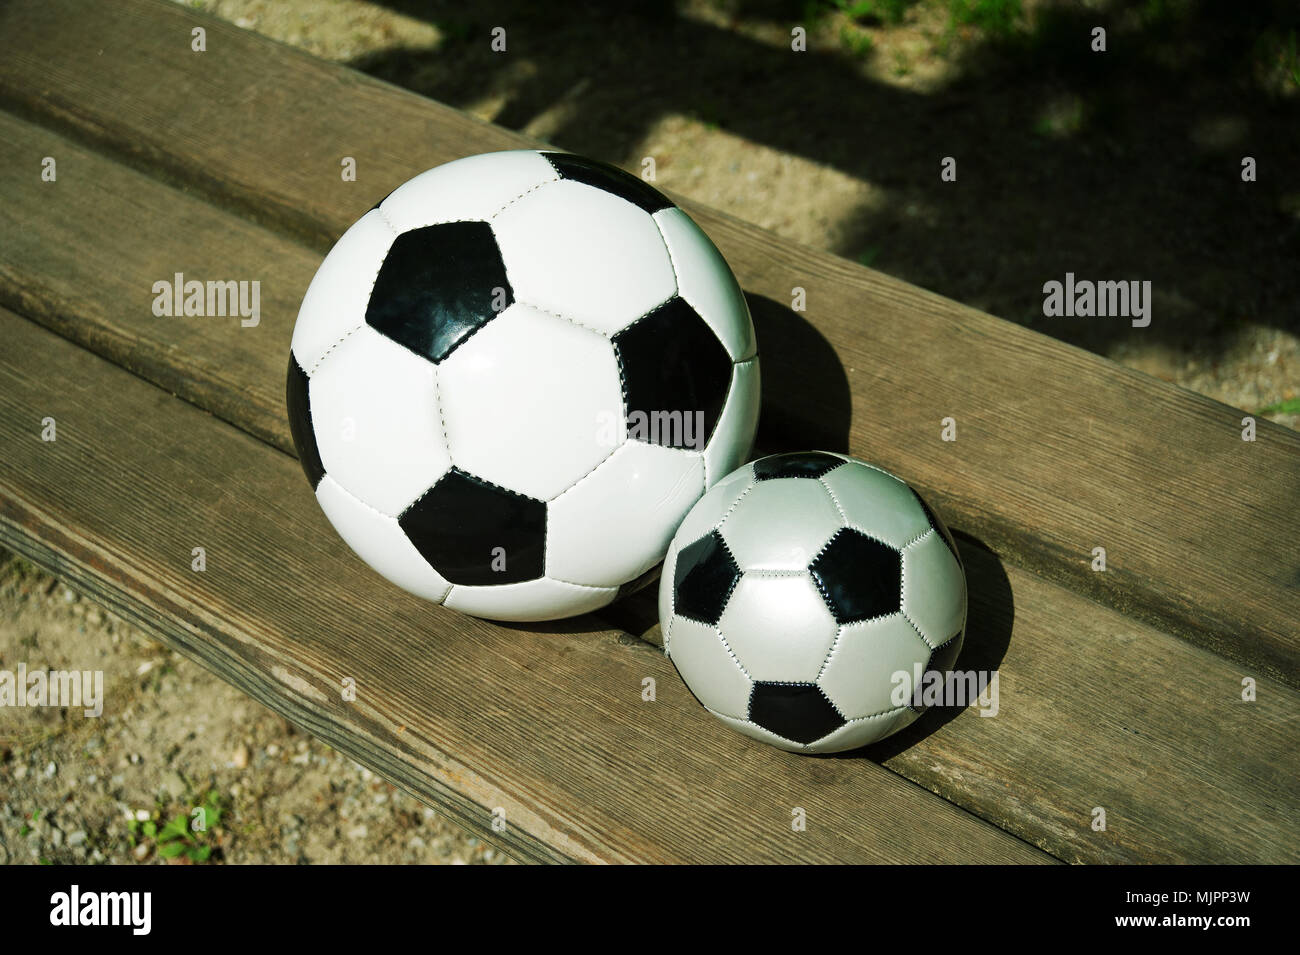 Deux ballons de soccer sur un parkbench au printemps Banque D'Images